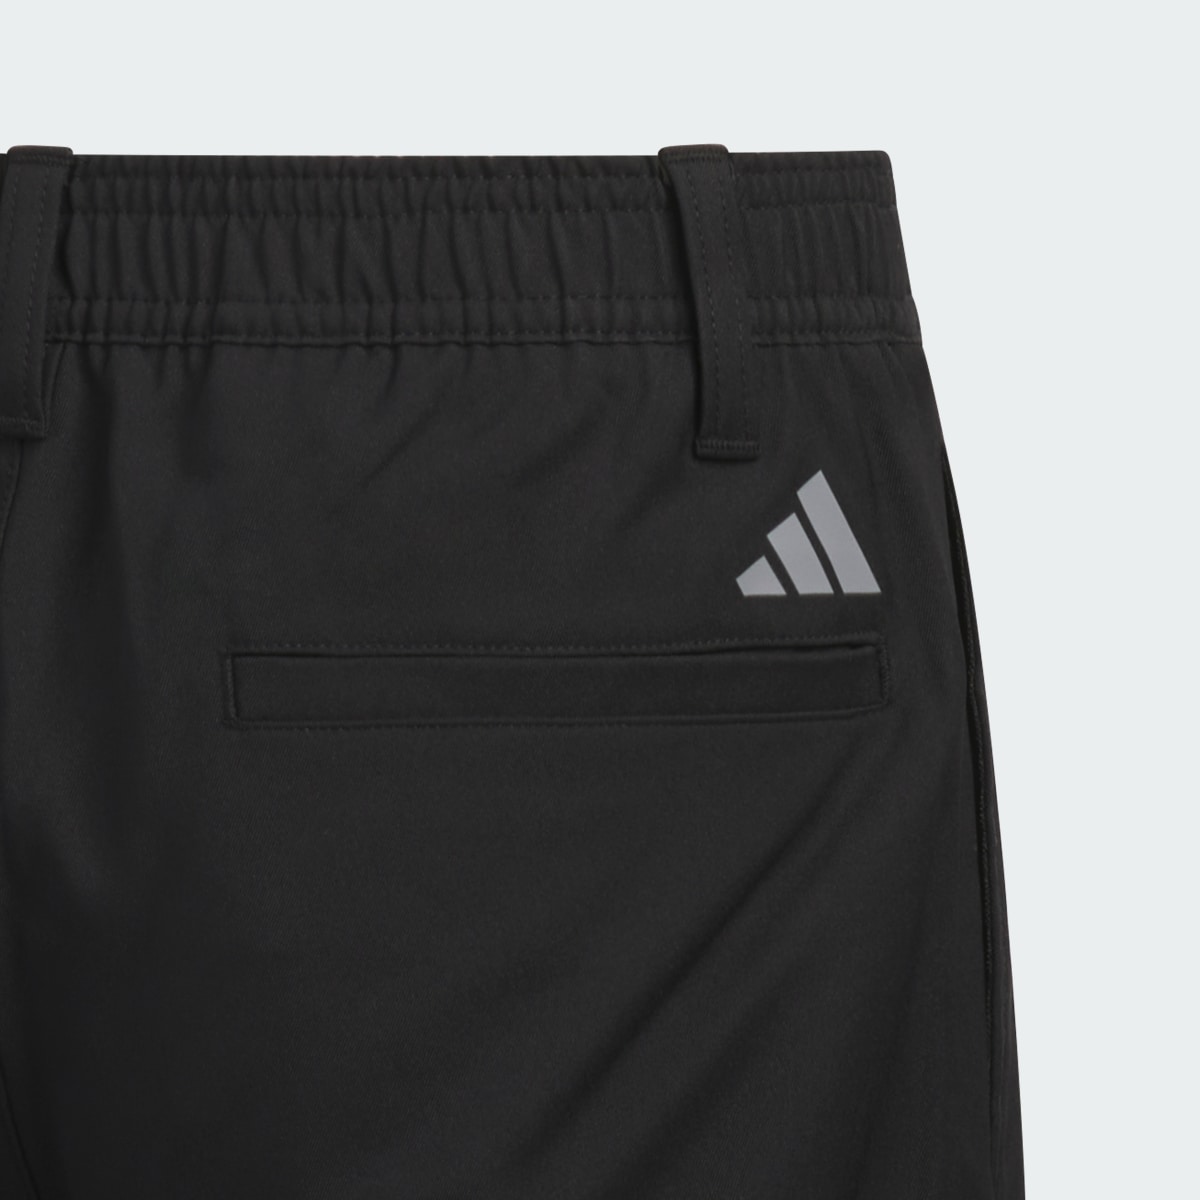 Adidas Pantaloni Ultimate Adjustable Junior. 4